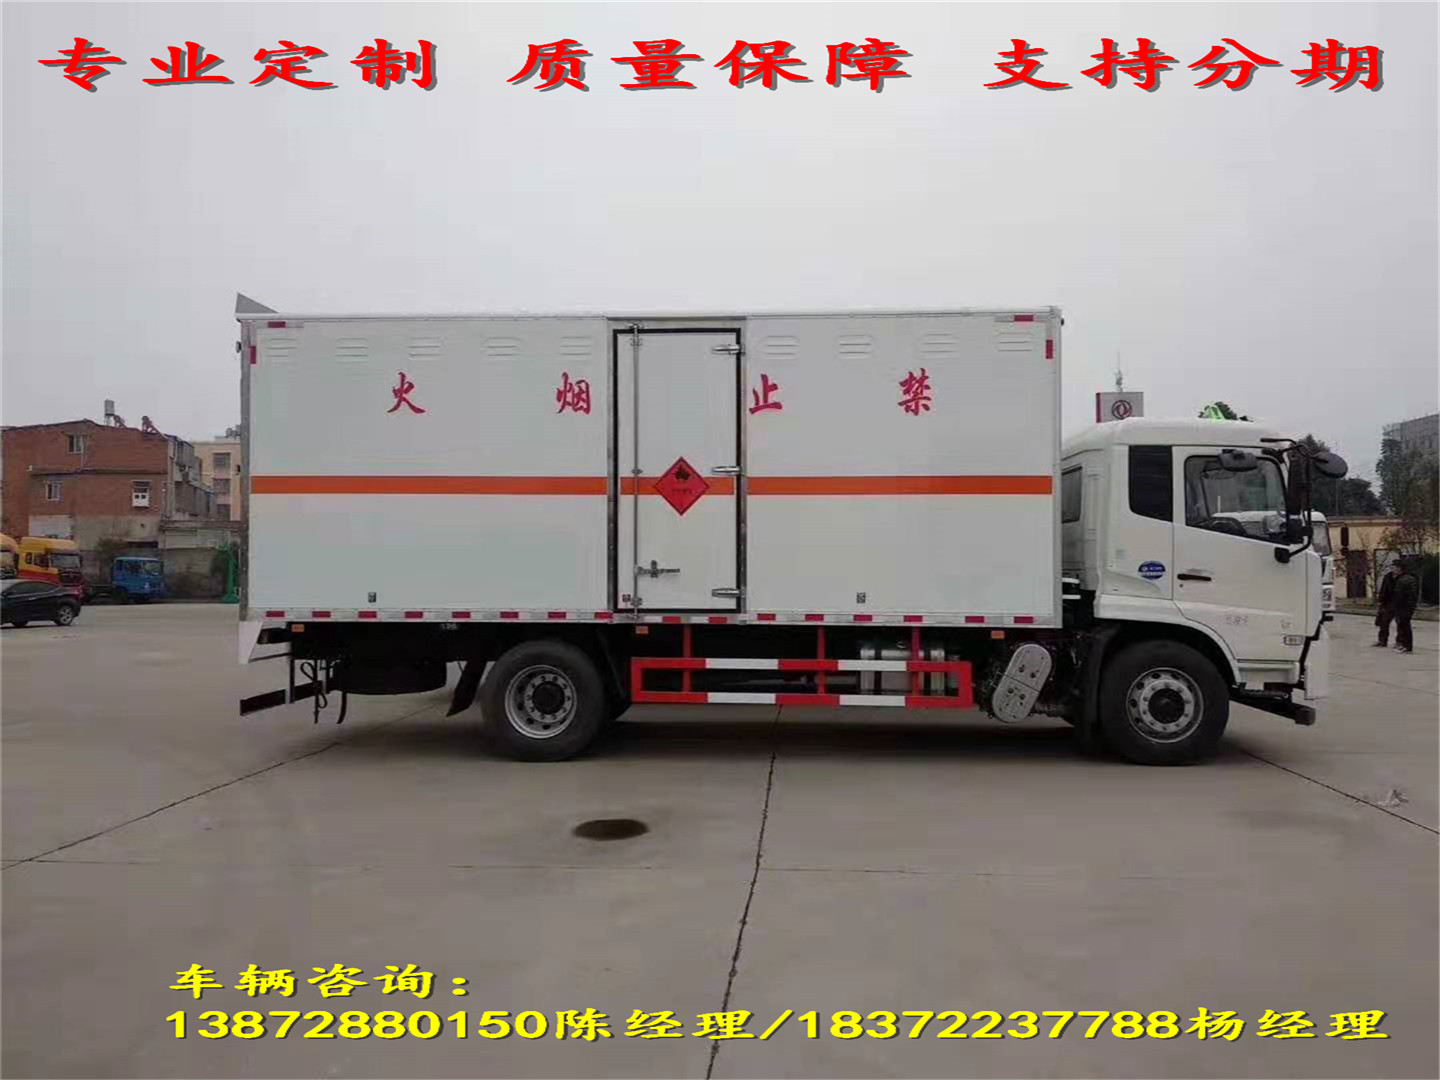 凉山彝族自治州江淮6.2米气瓶运输车具体规定